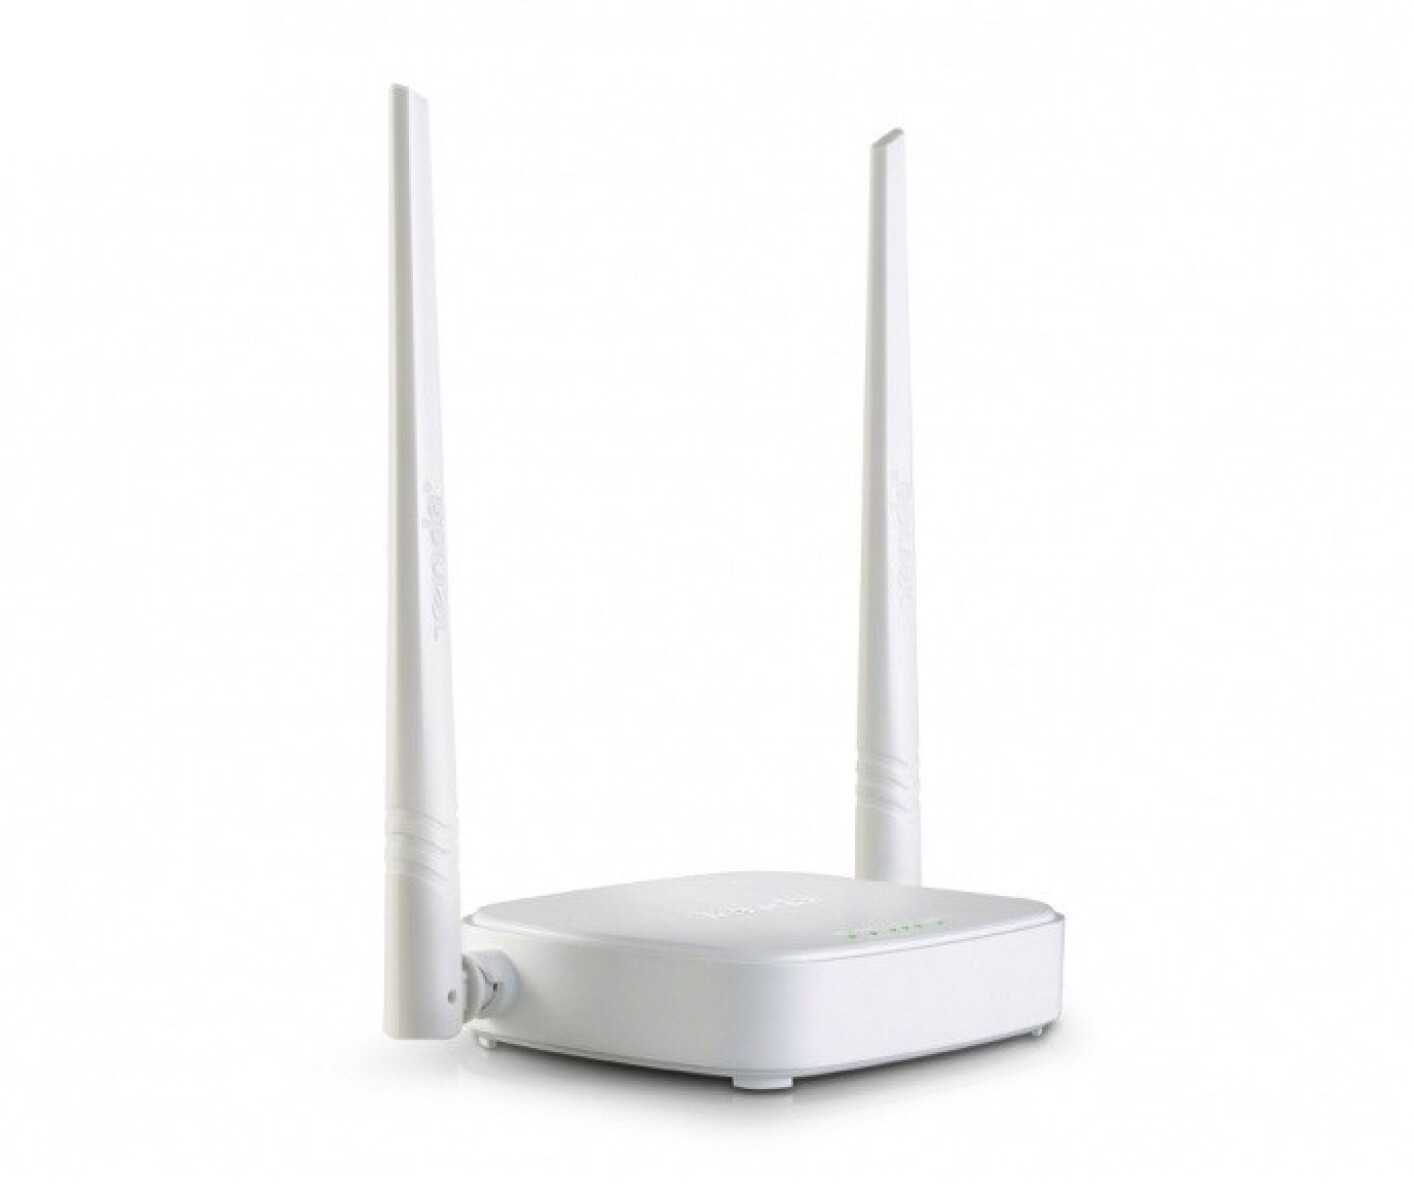 Router Wifi N Tenda N301 300MBPS - 001 